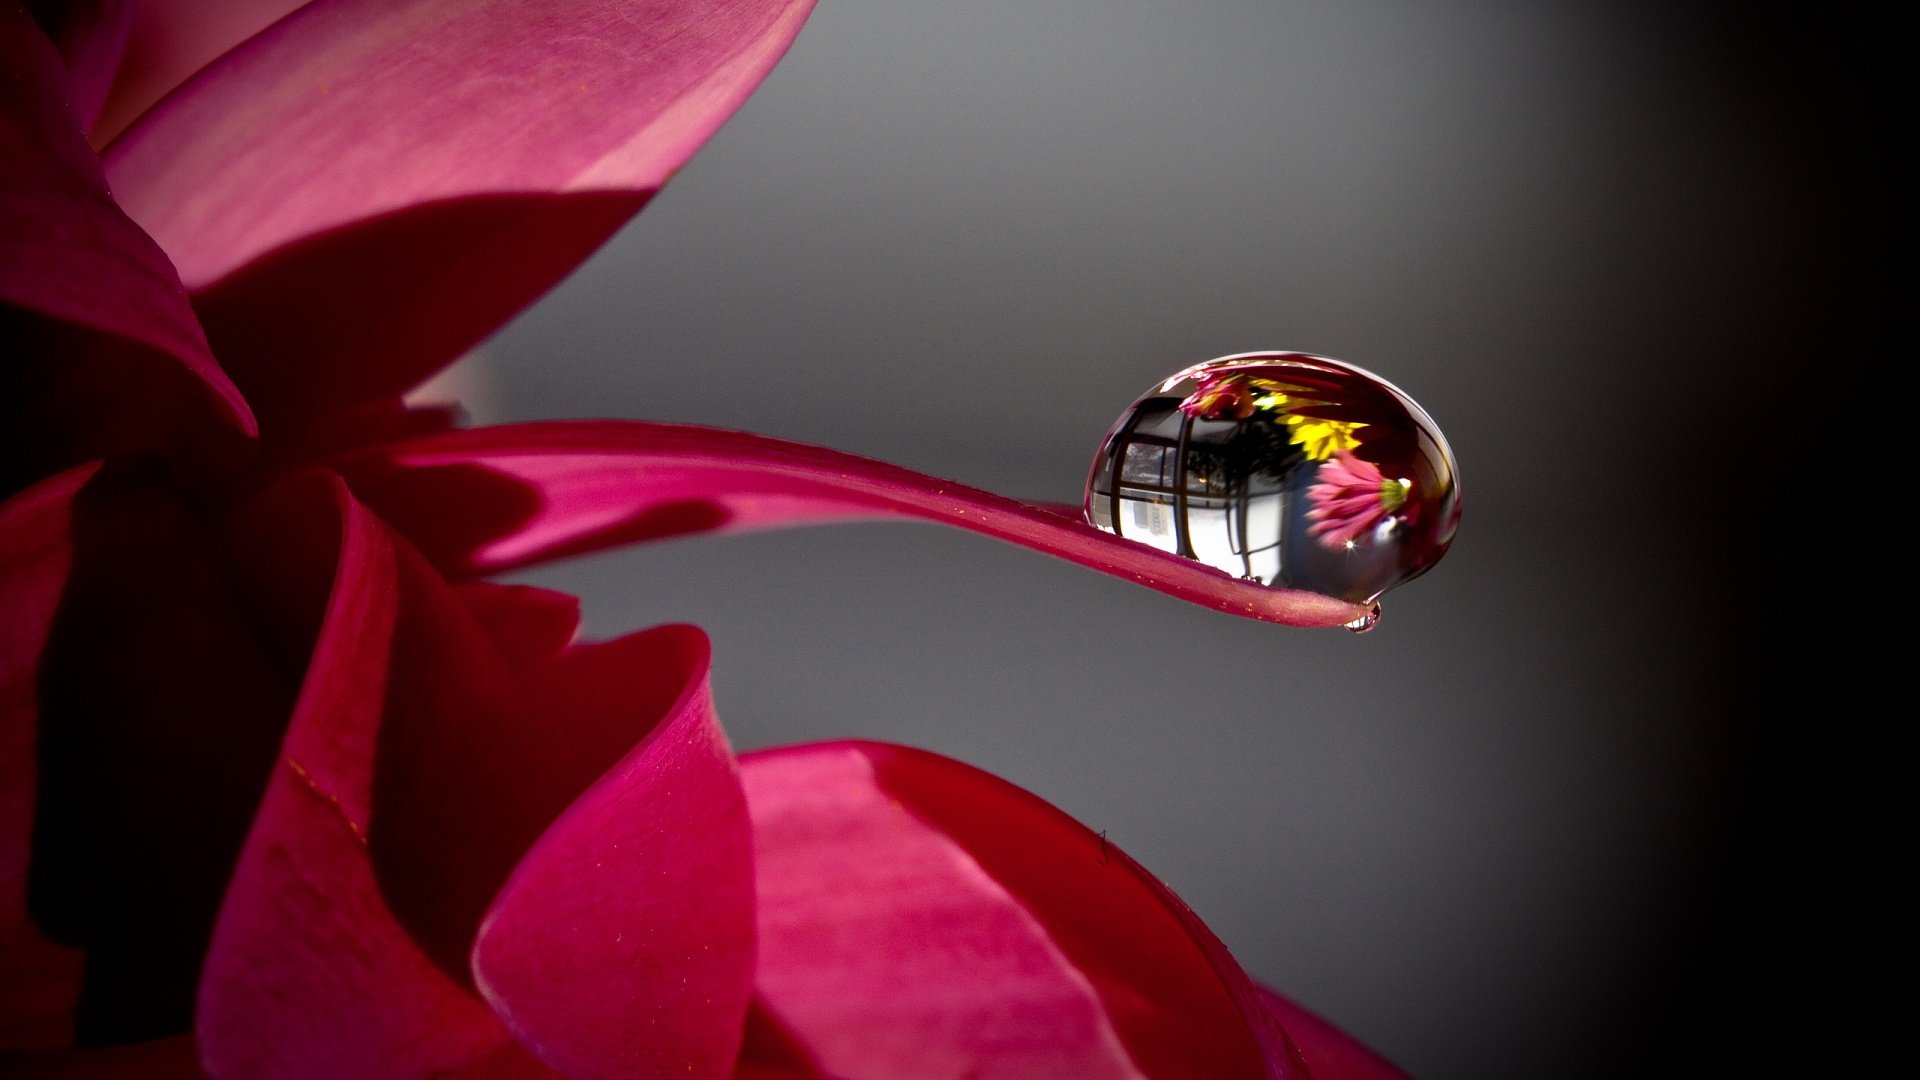 Water Drop Wallpaper - Flower With Water Drops Hd - HD Wallpaper 